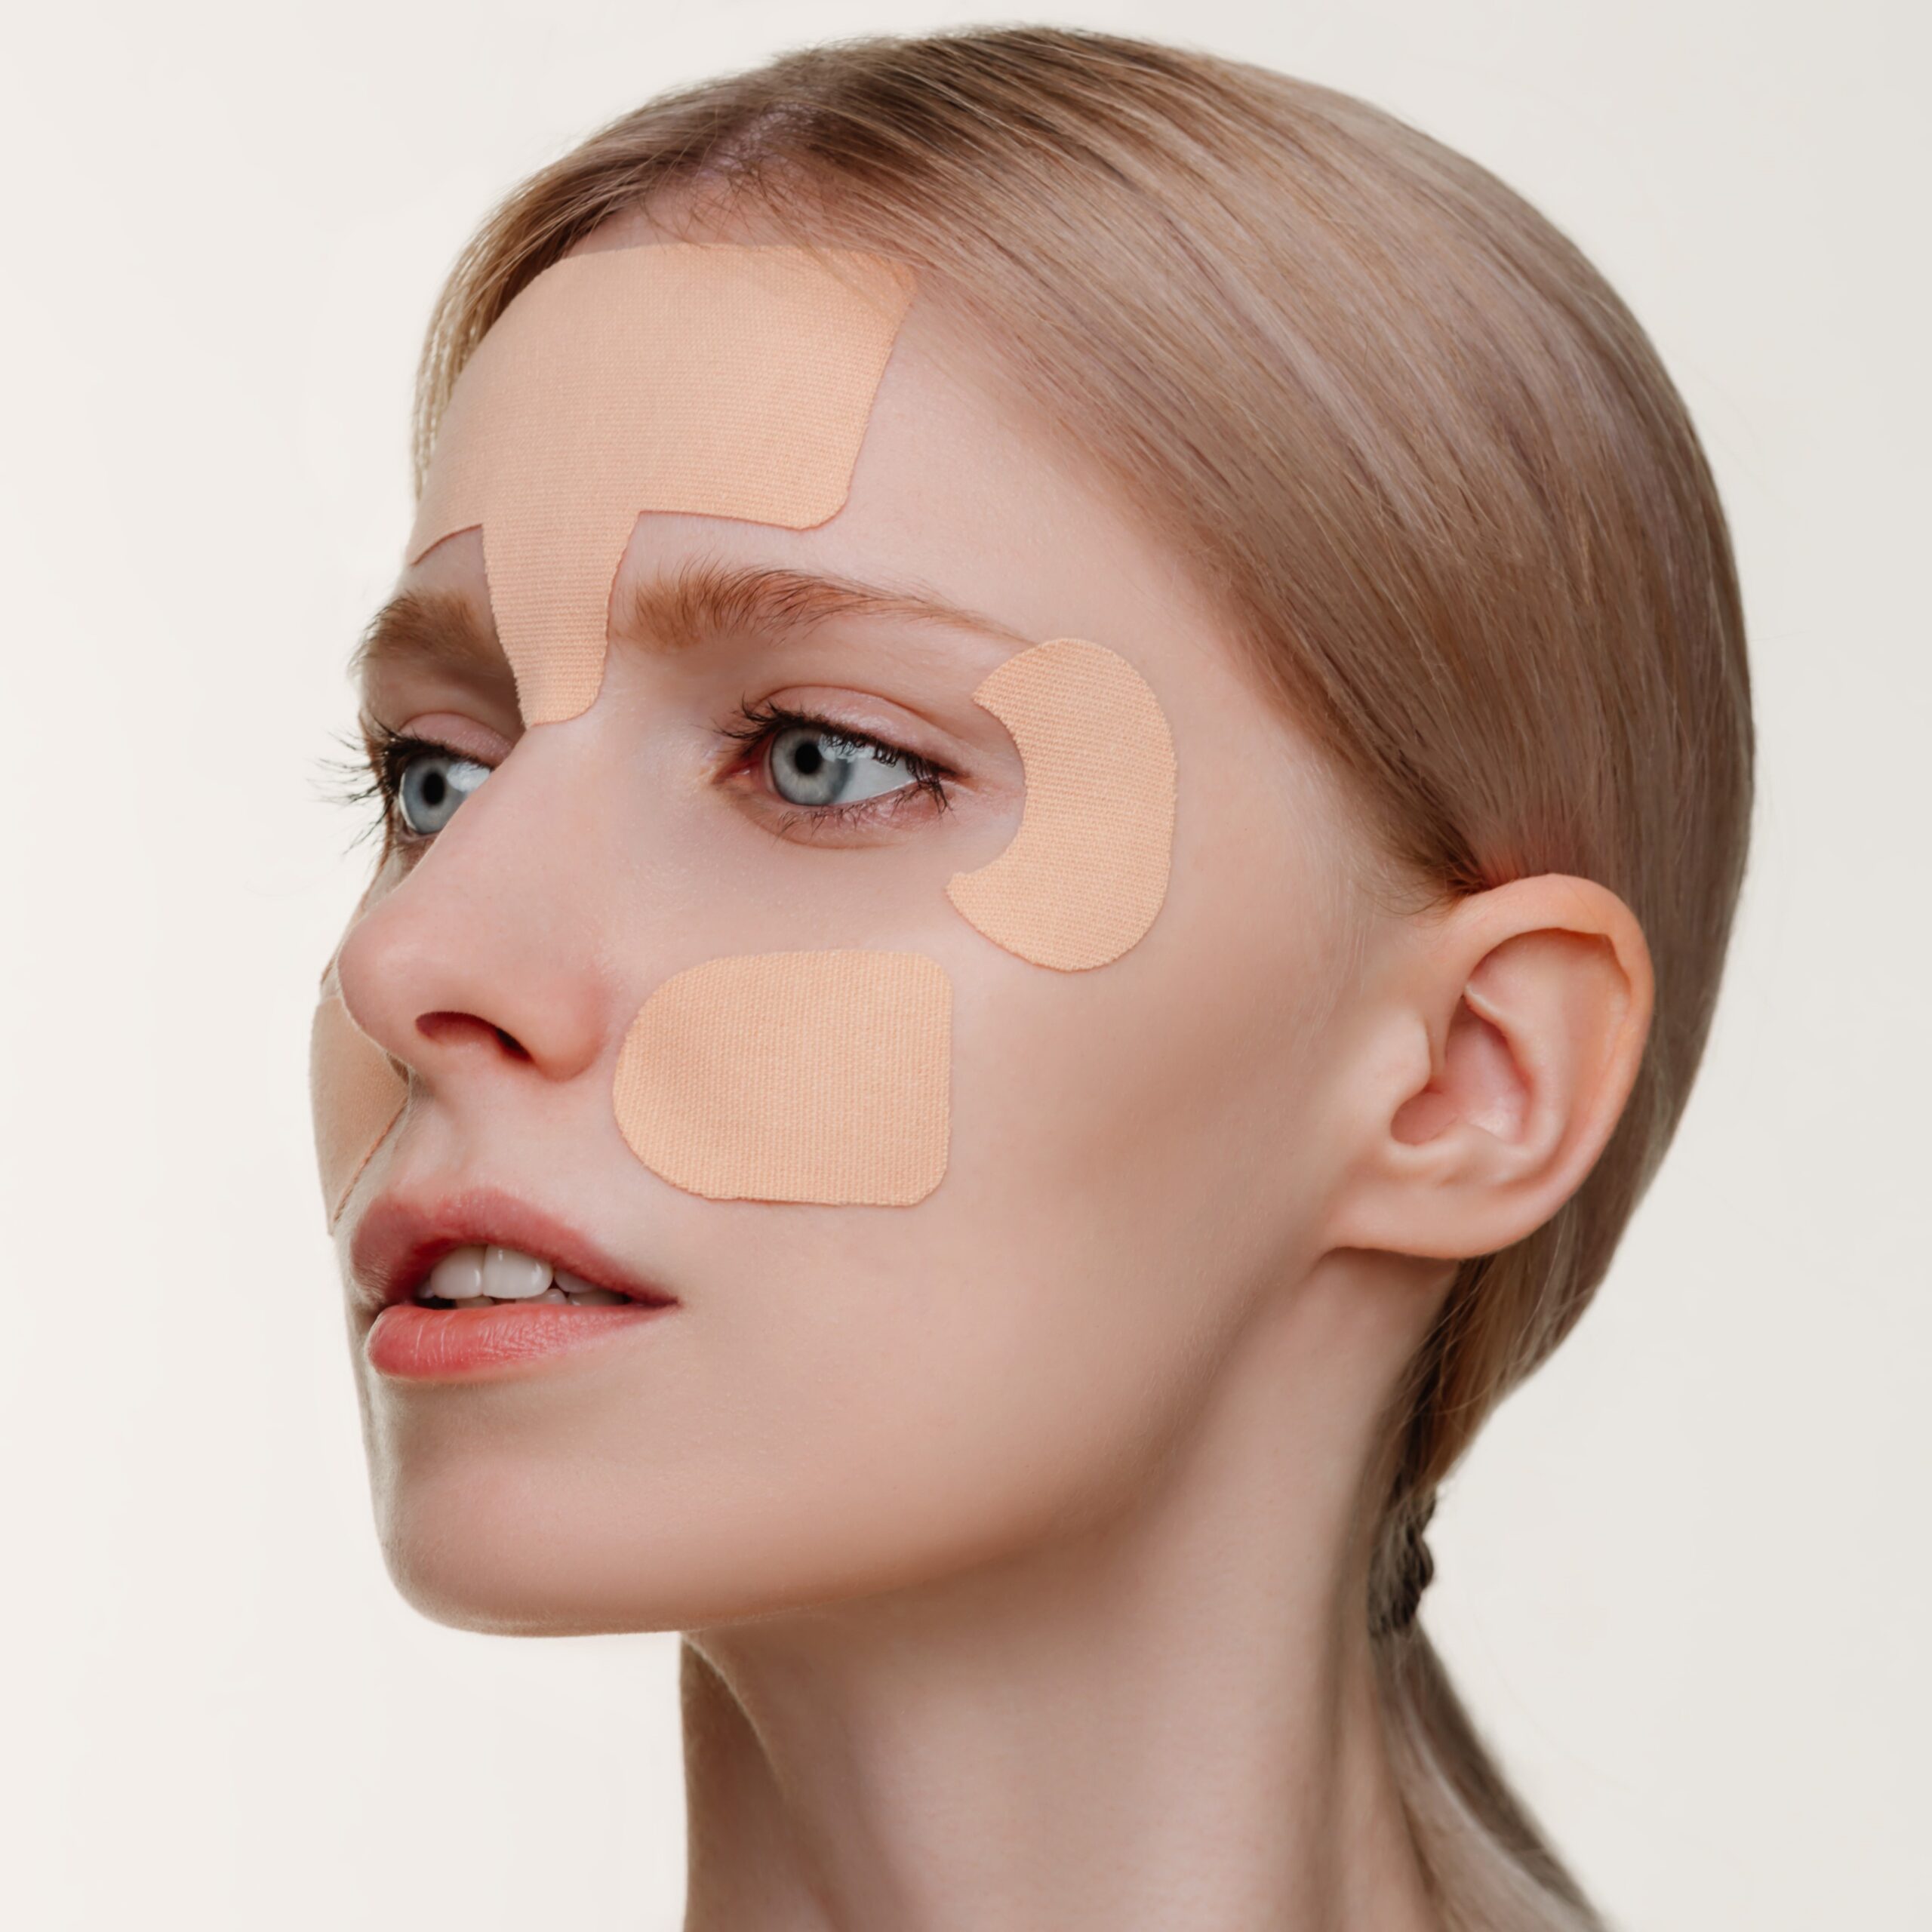 Тейпы для лица от морщин Risorio Beauty Tape, 15 шт - Risorio beauty tape